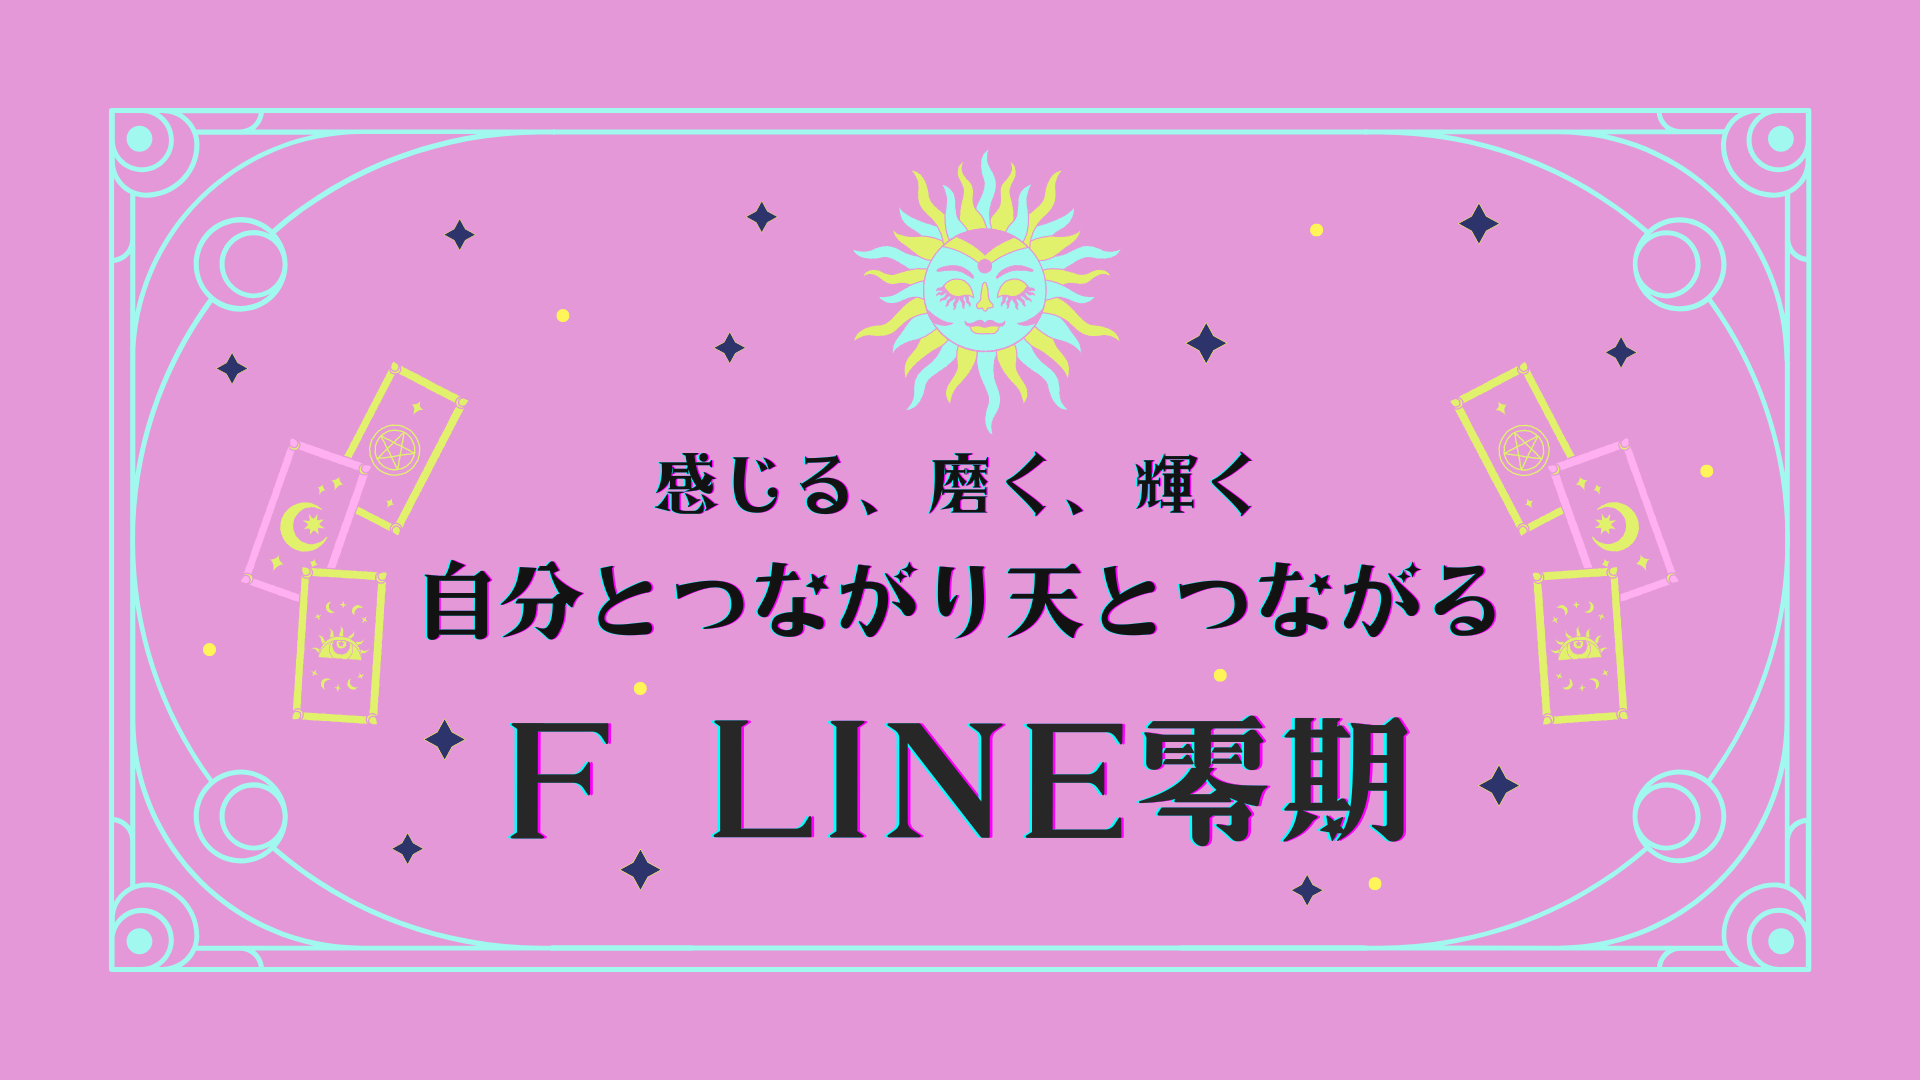 2/4(土) 20:00〜 F先生のオンライン連続講座「F LINE」体験会